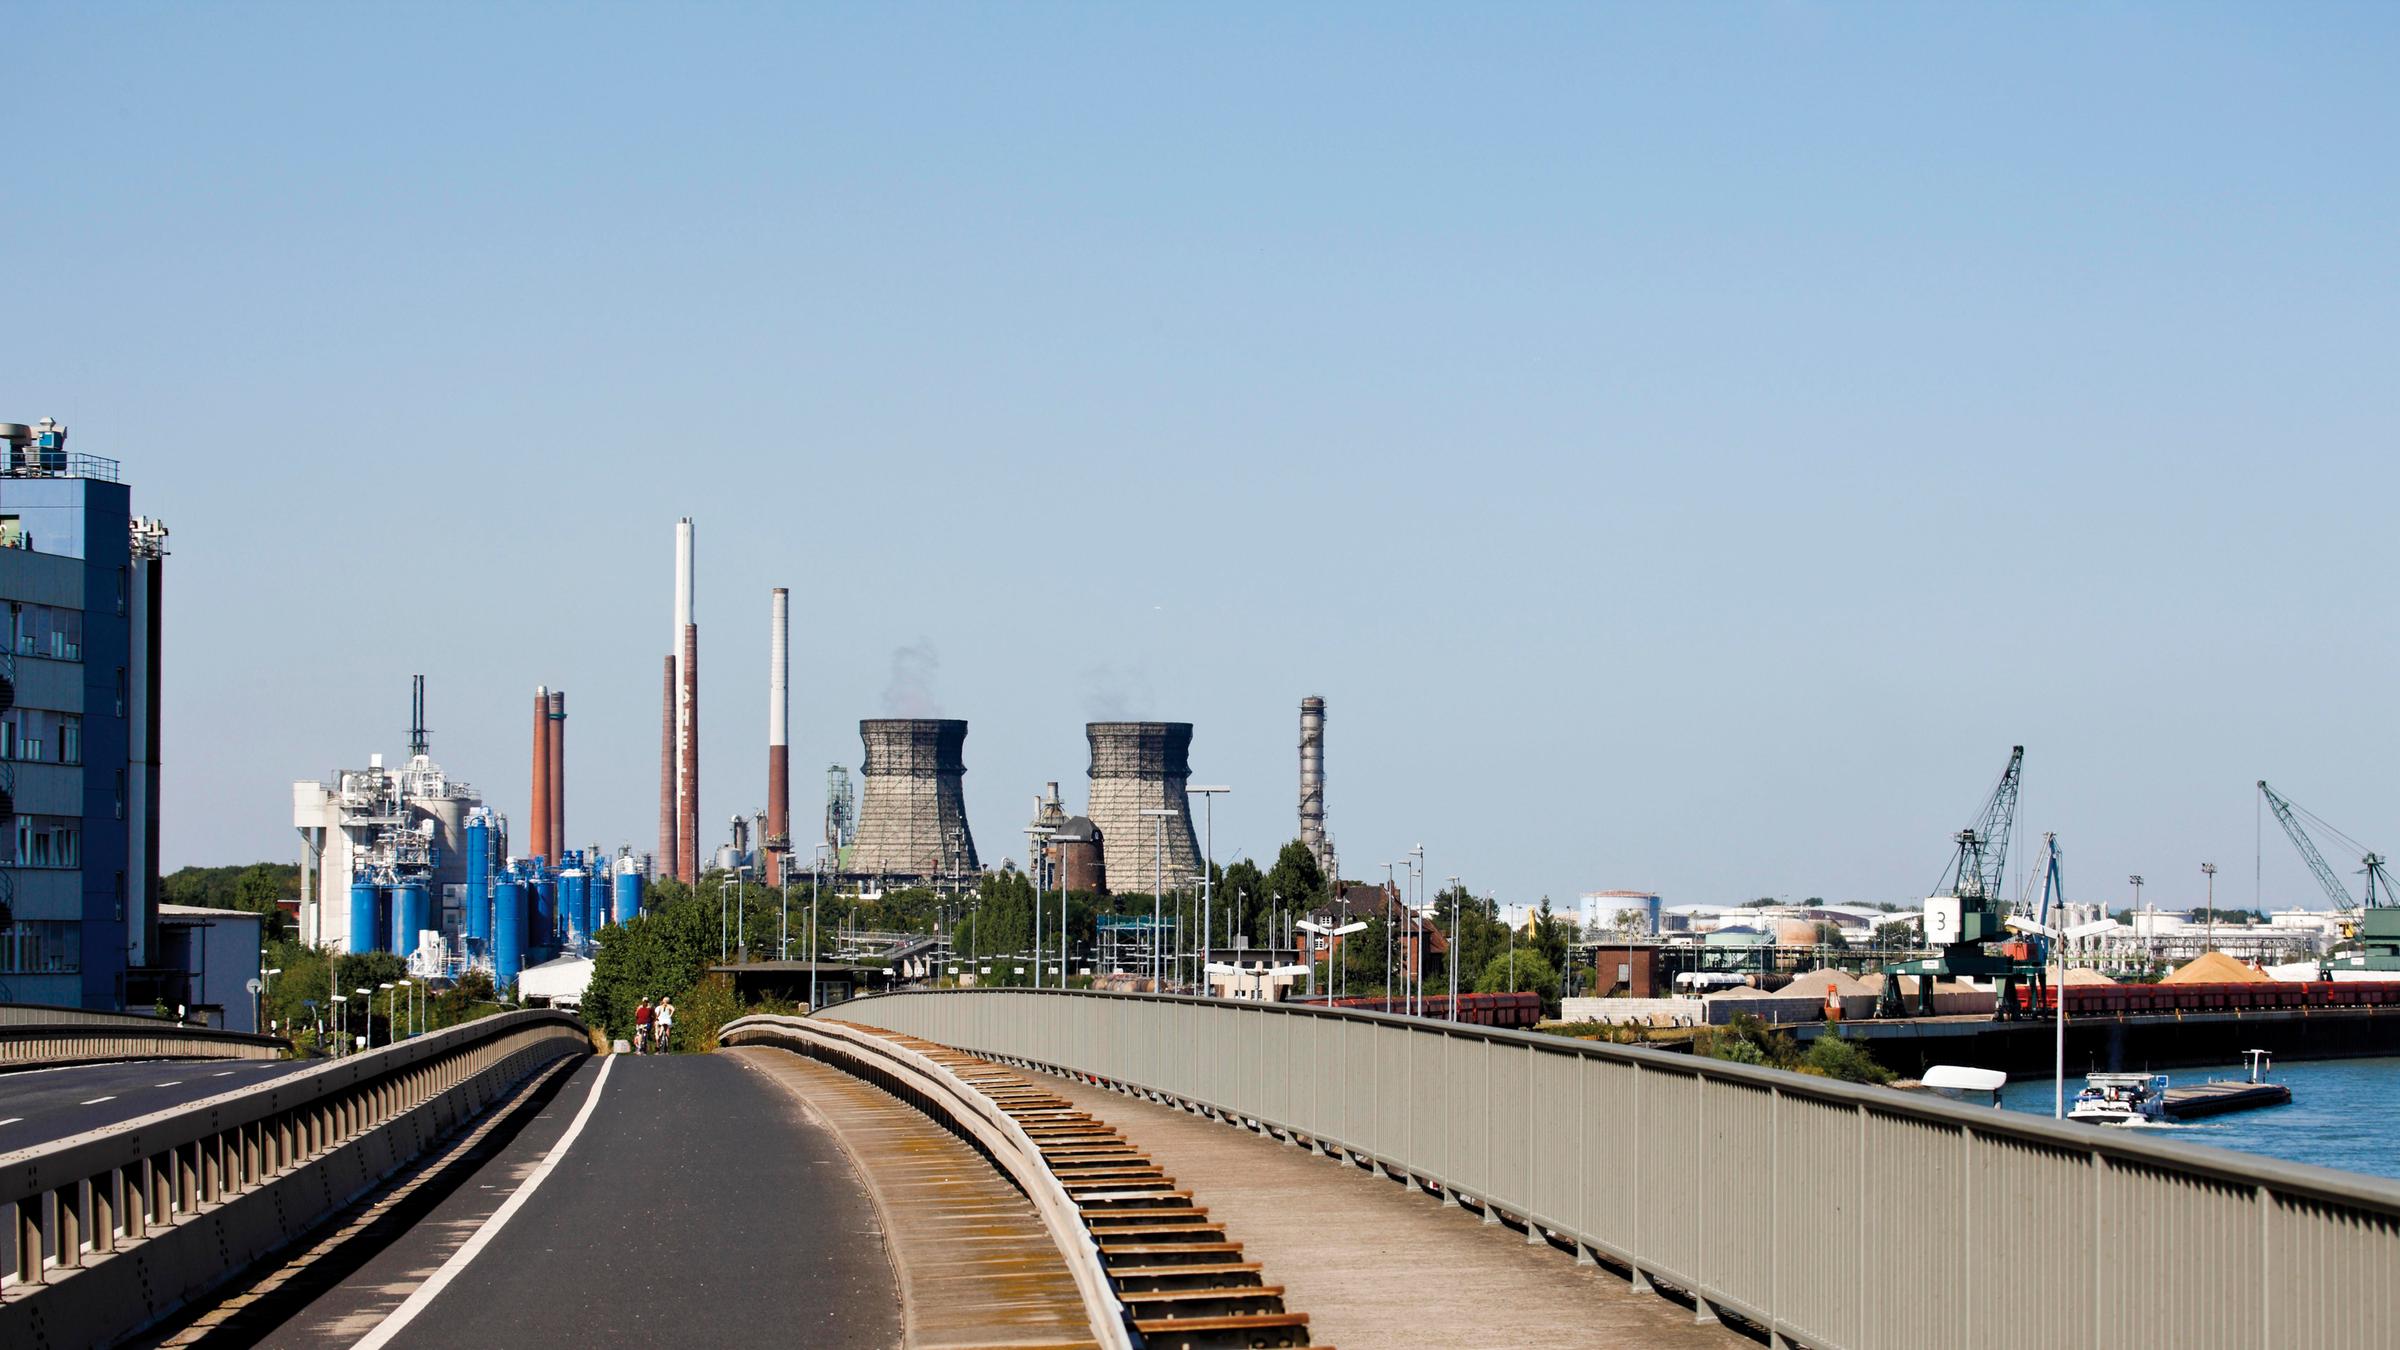 Shell Rheinland Raffinerie am Rhein bei Köln-Godorf, Nordrhein-Westfalen, Deutschland, Europa